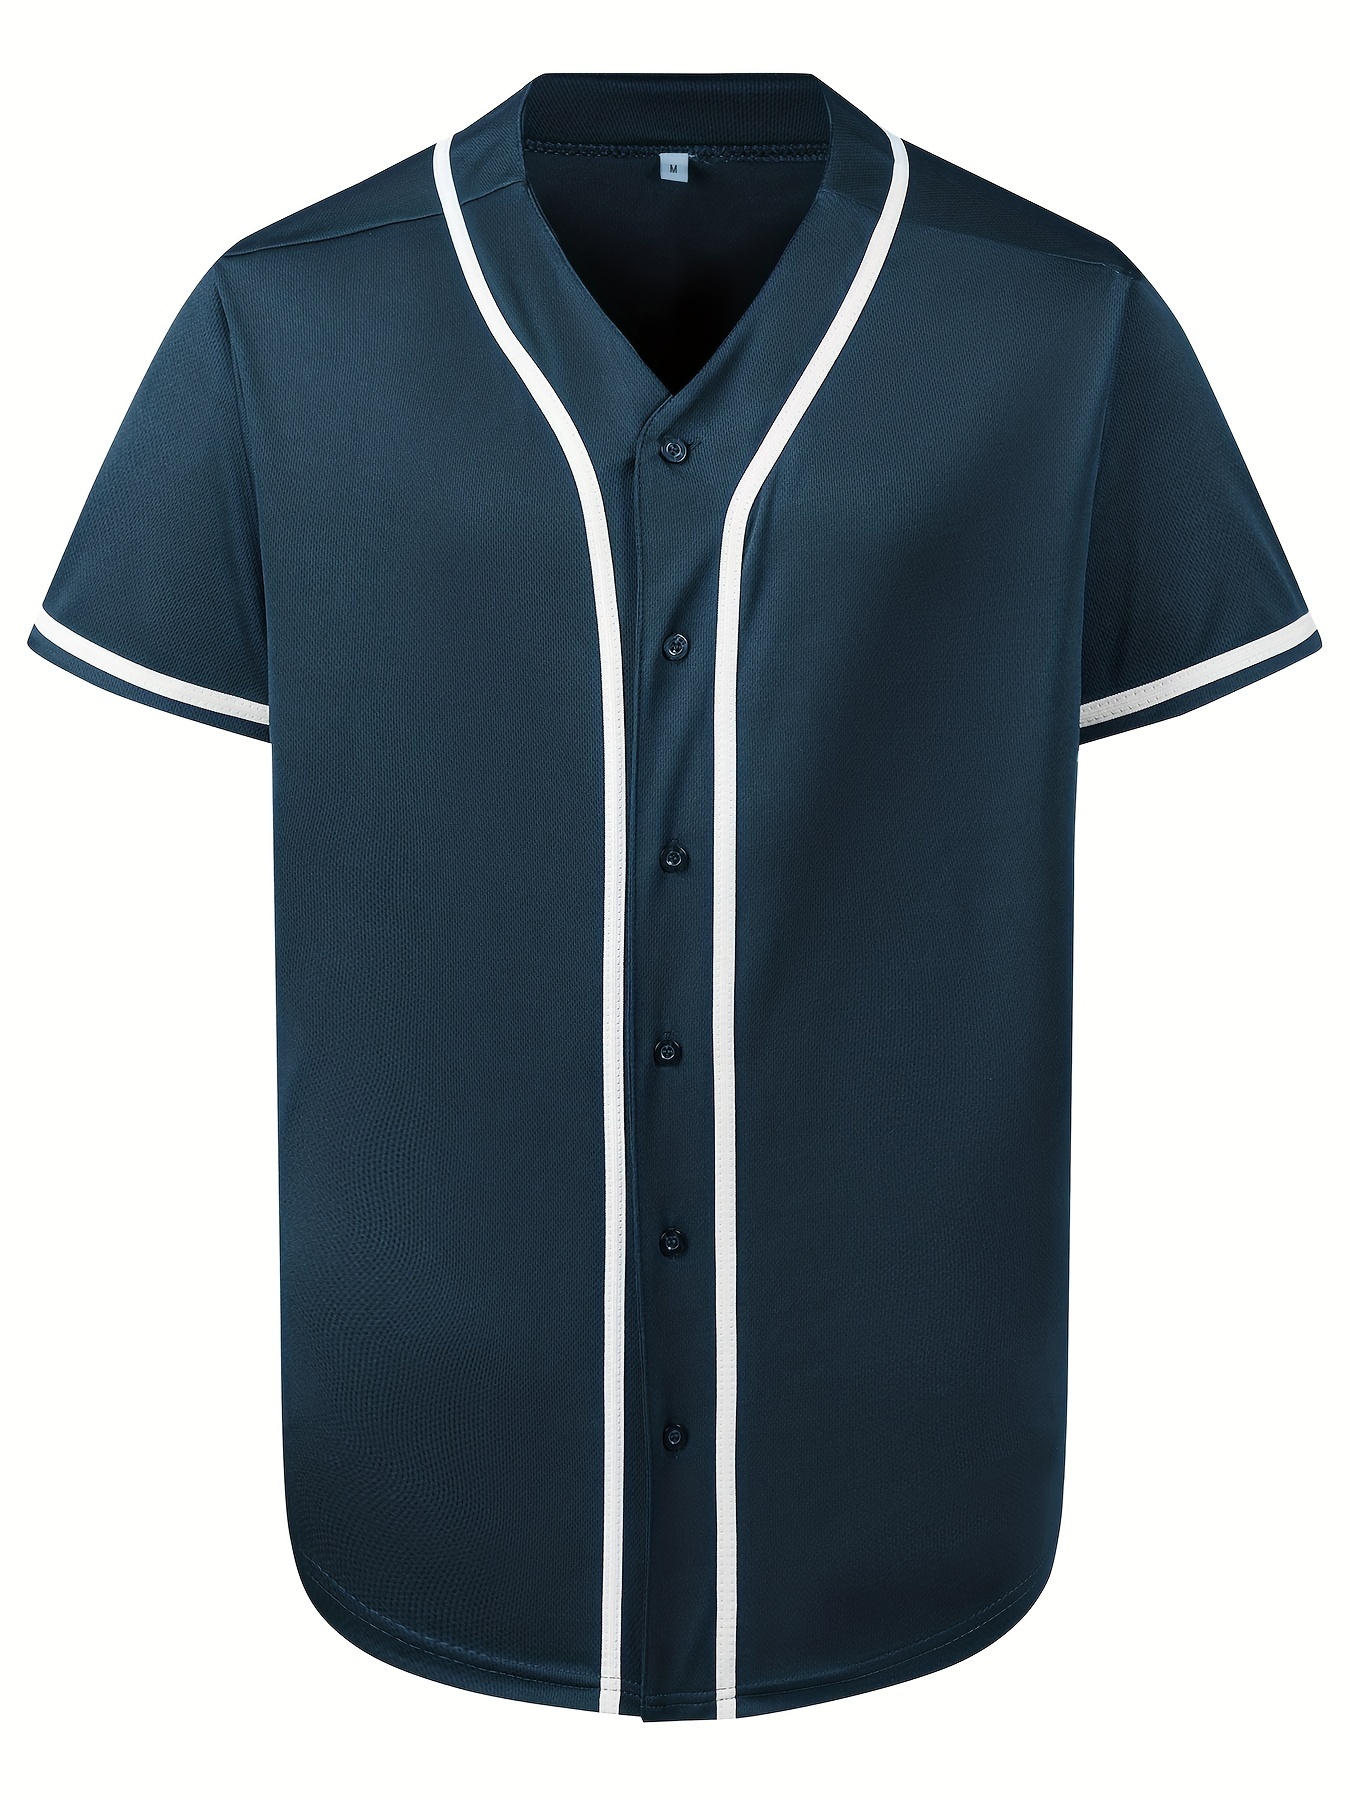 Blank Plain Hip Hop Hipster Baseball Jersey, Button Up Sport Shirt, Uniforms  For Men Women - Temu United Arab Emirates